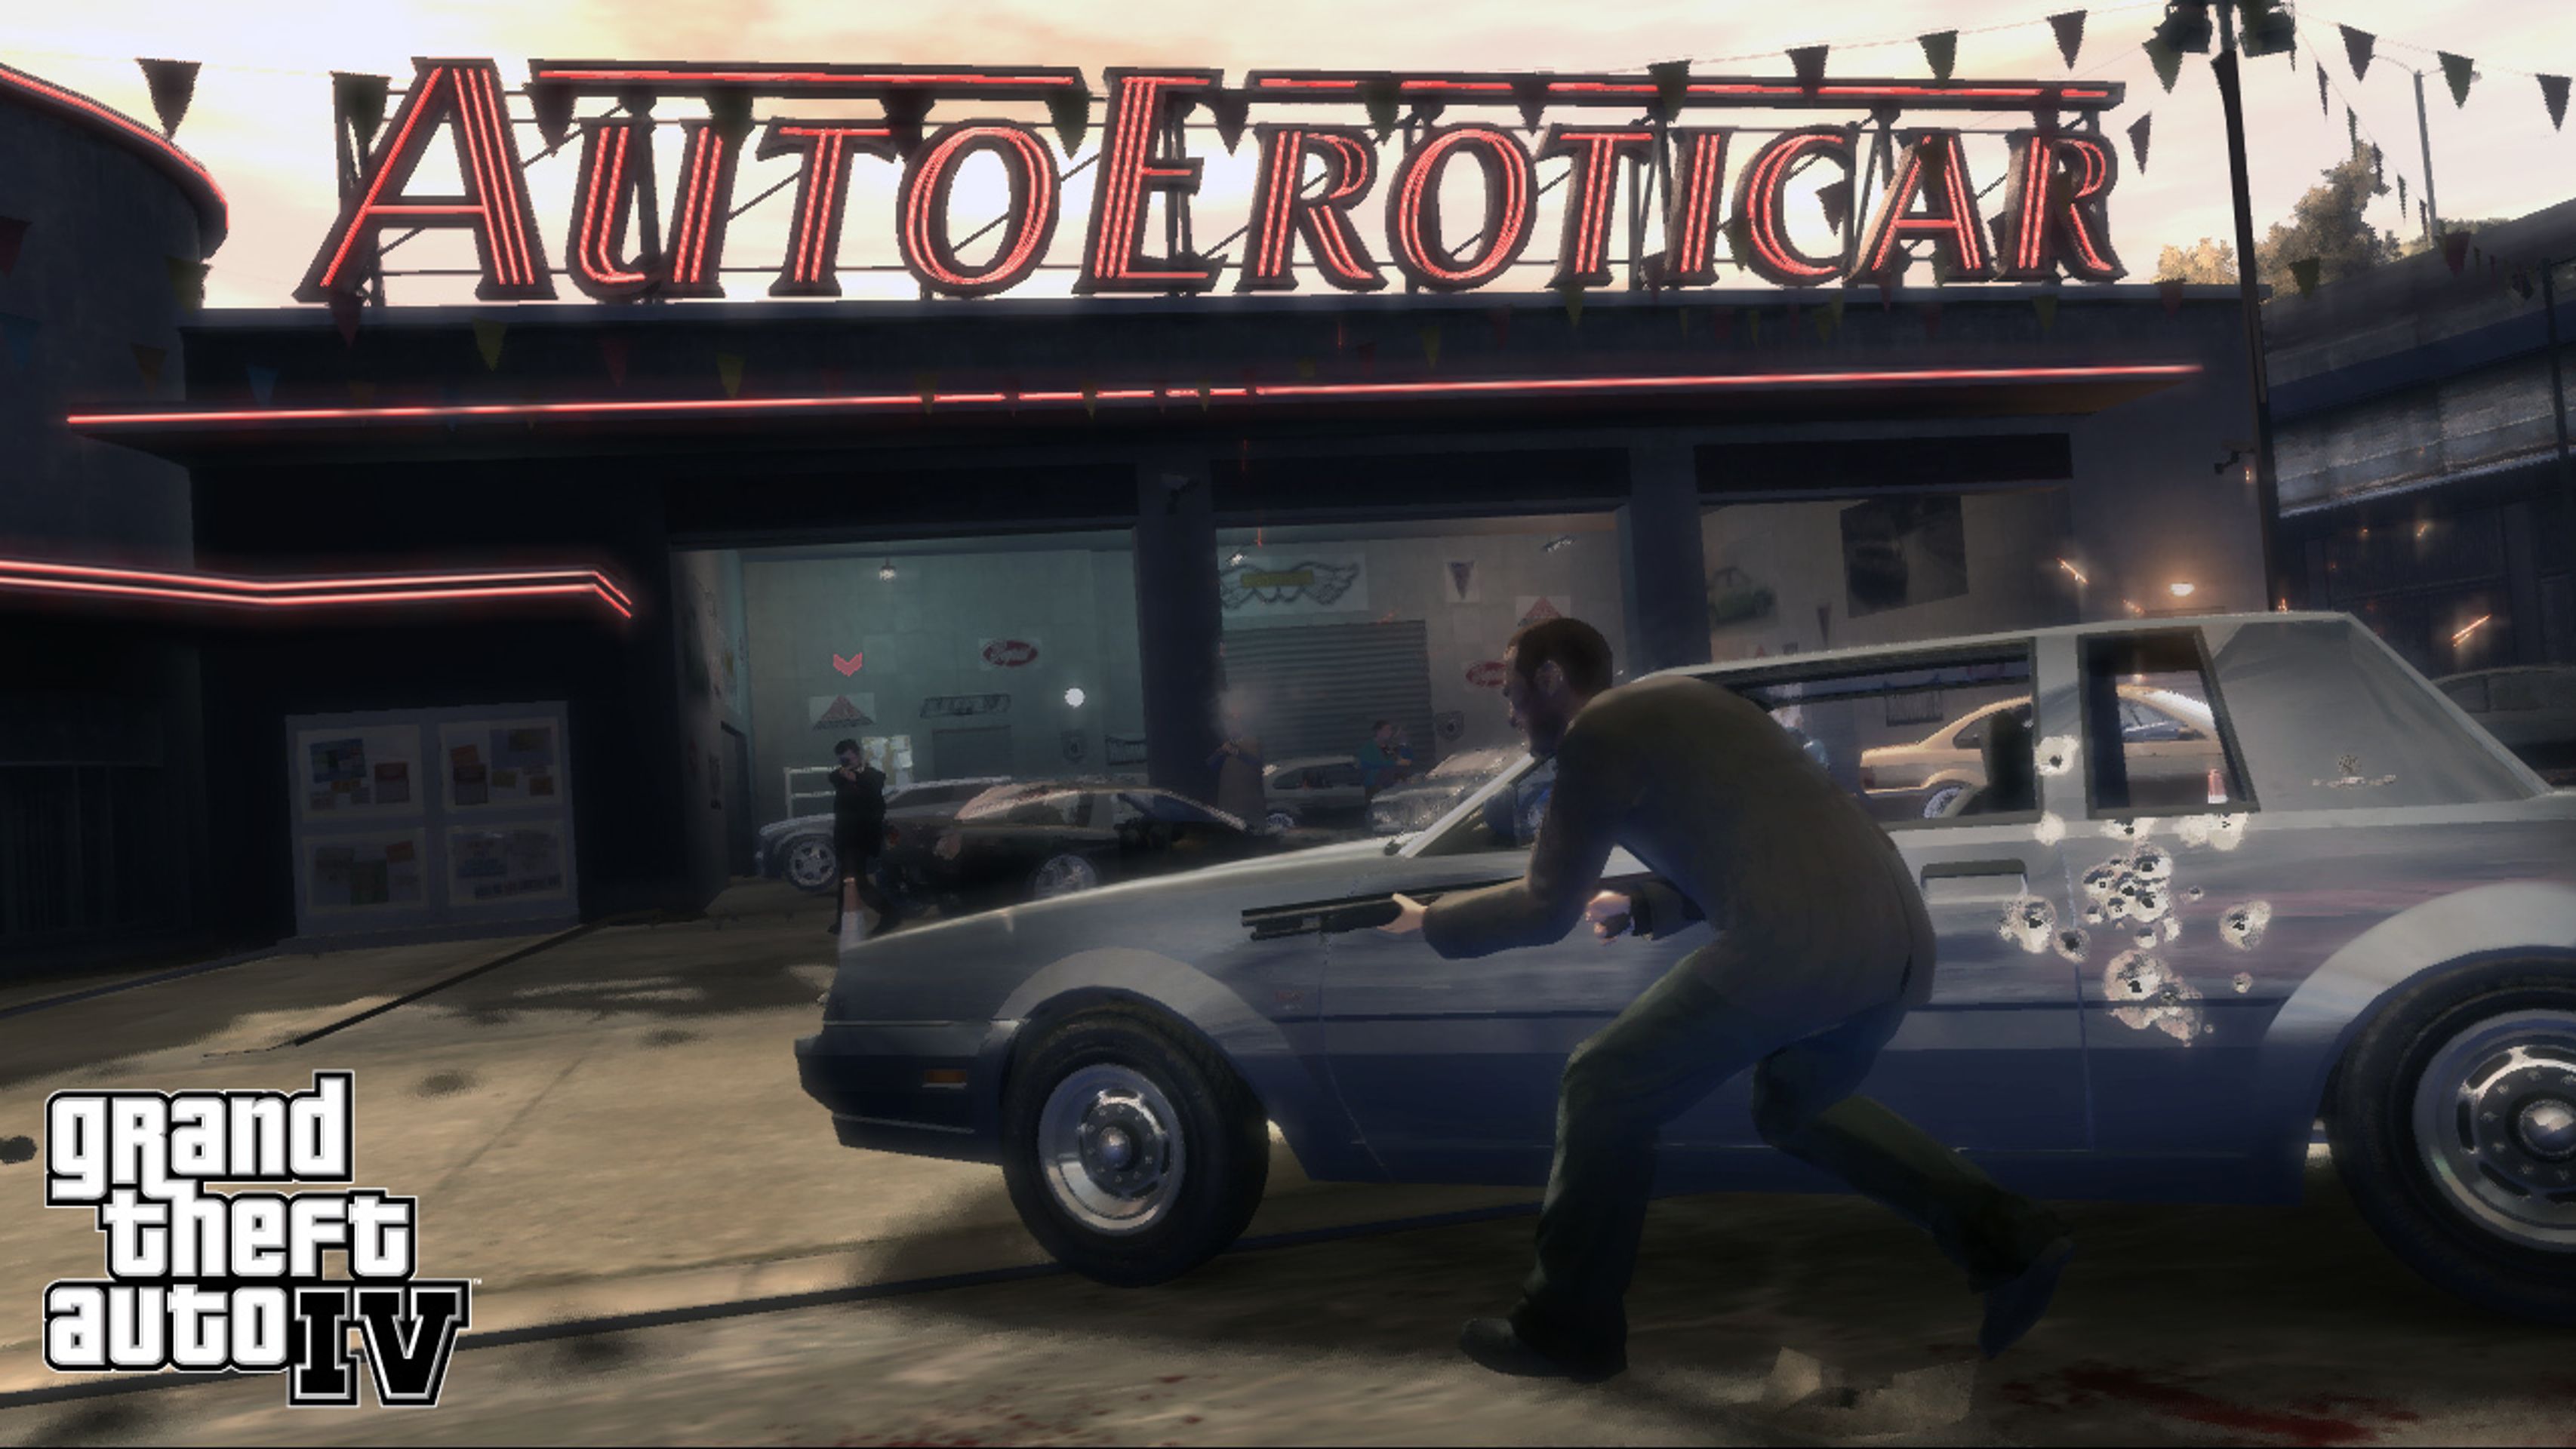 Grand Theft Auto IV - Grand Theft Auto IV galerie (4/10)